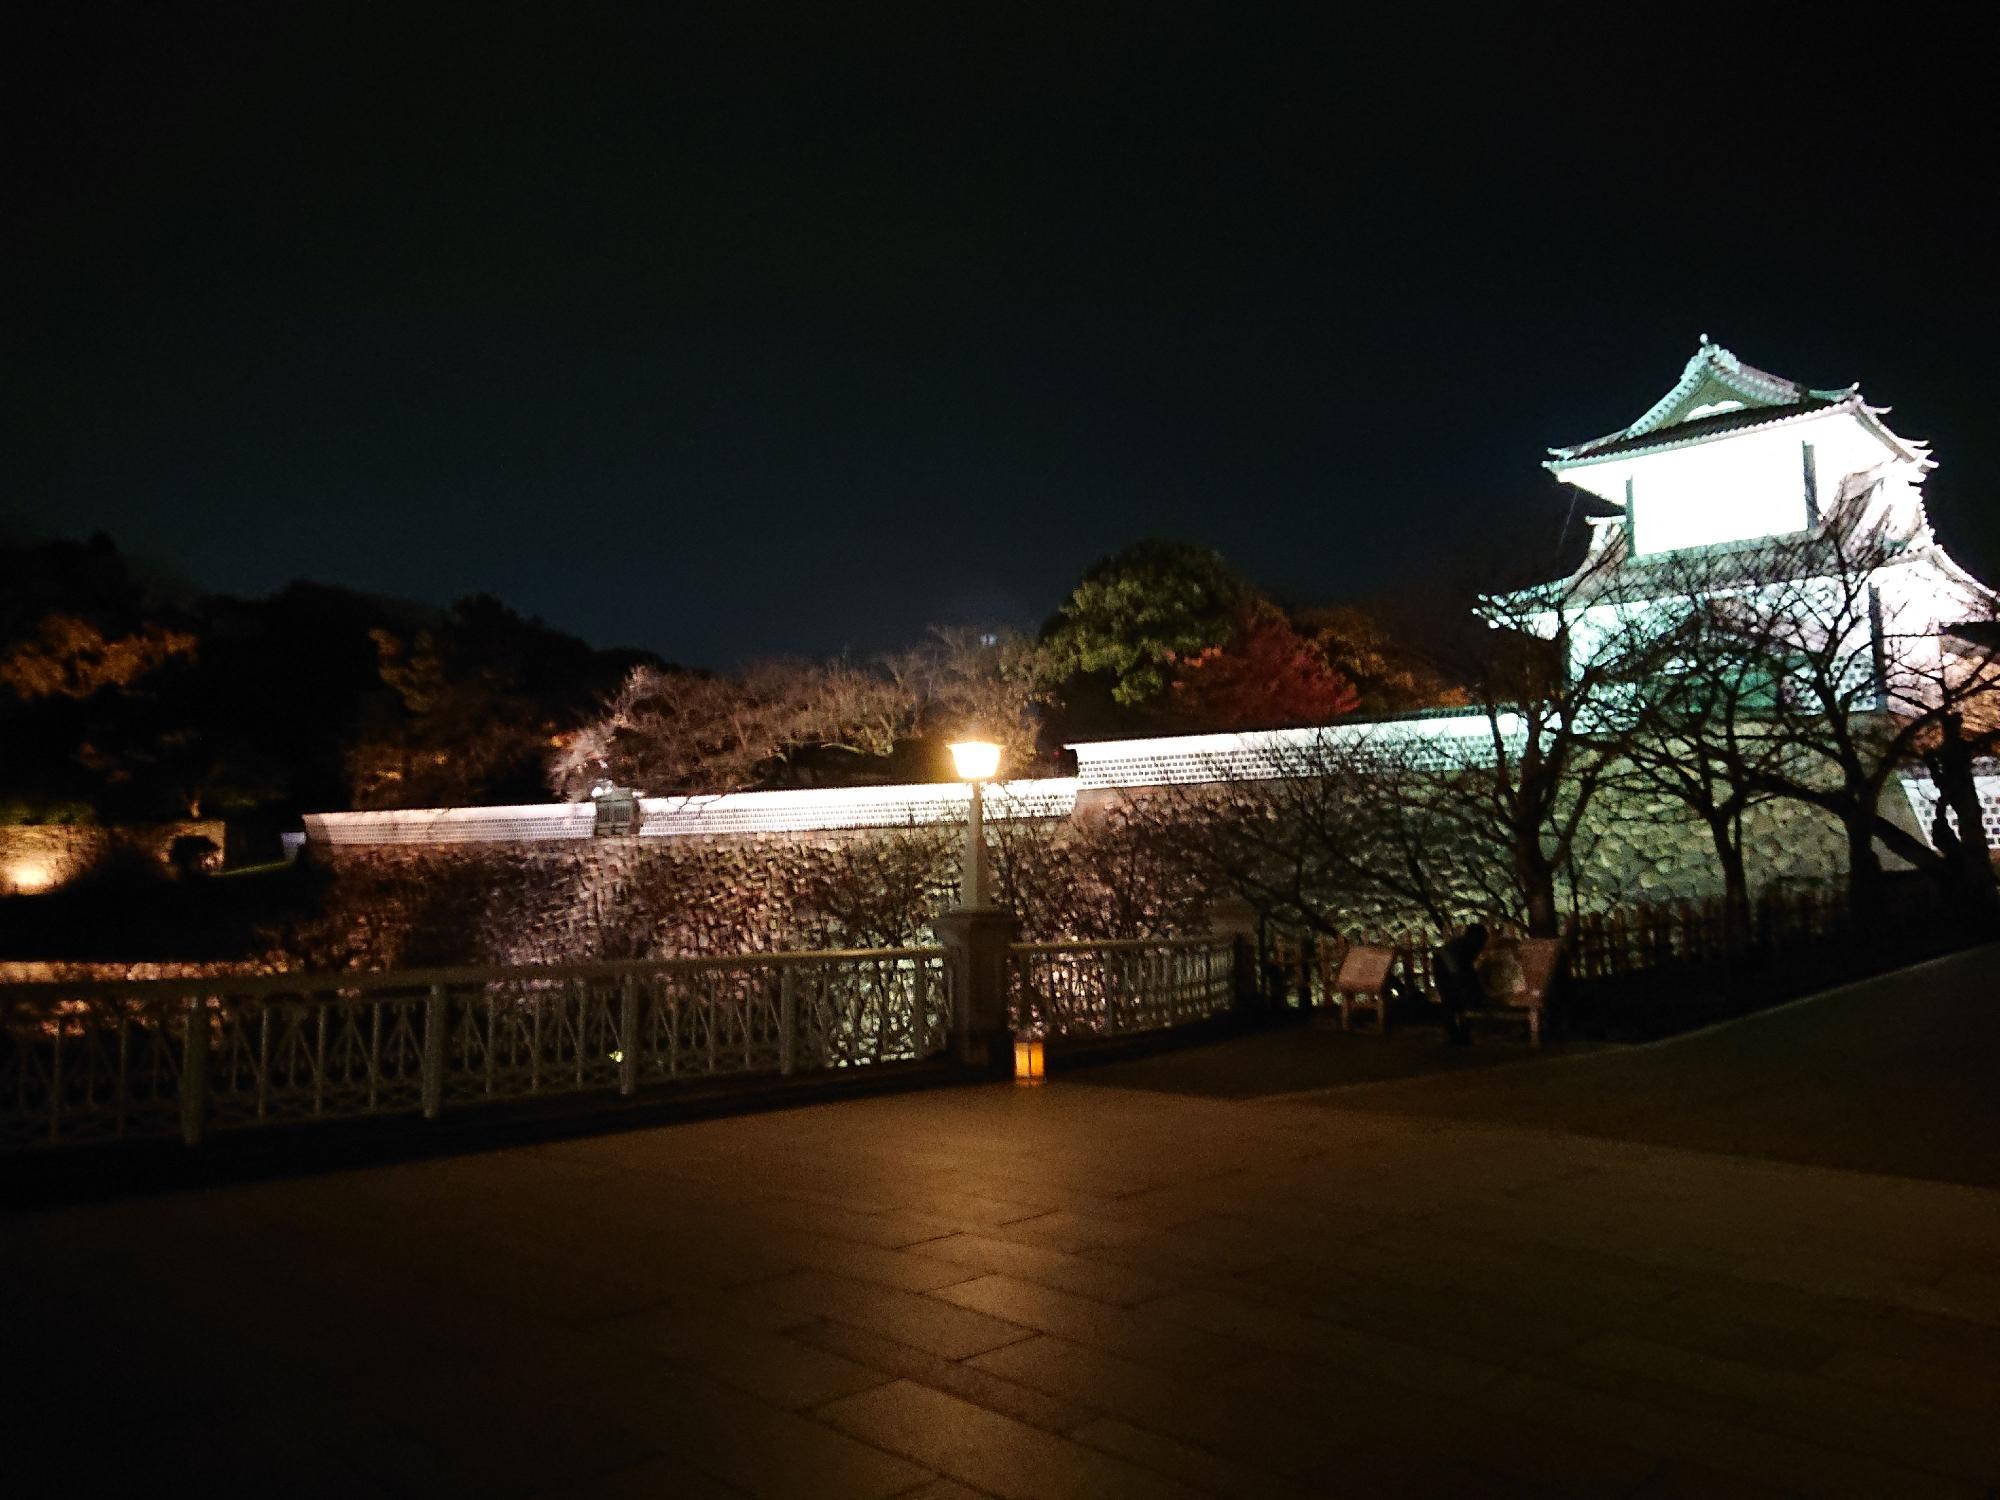 金沢市 金沢城公園の通常ライトアップ 日没後に夜景を楽しもう Mayumi T Yahoo Japan クリエイターズプログラム